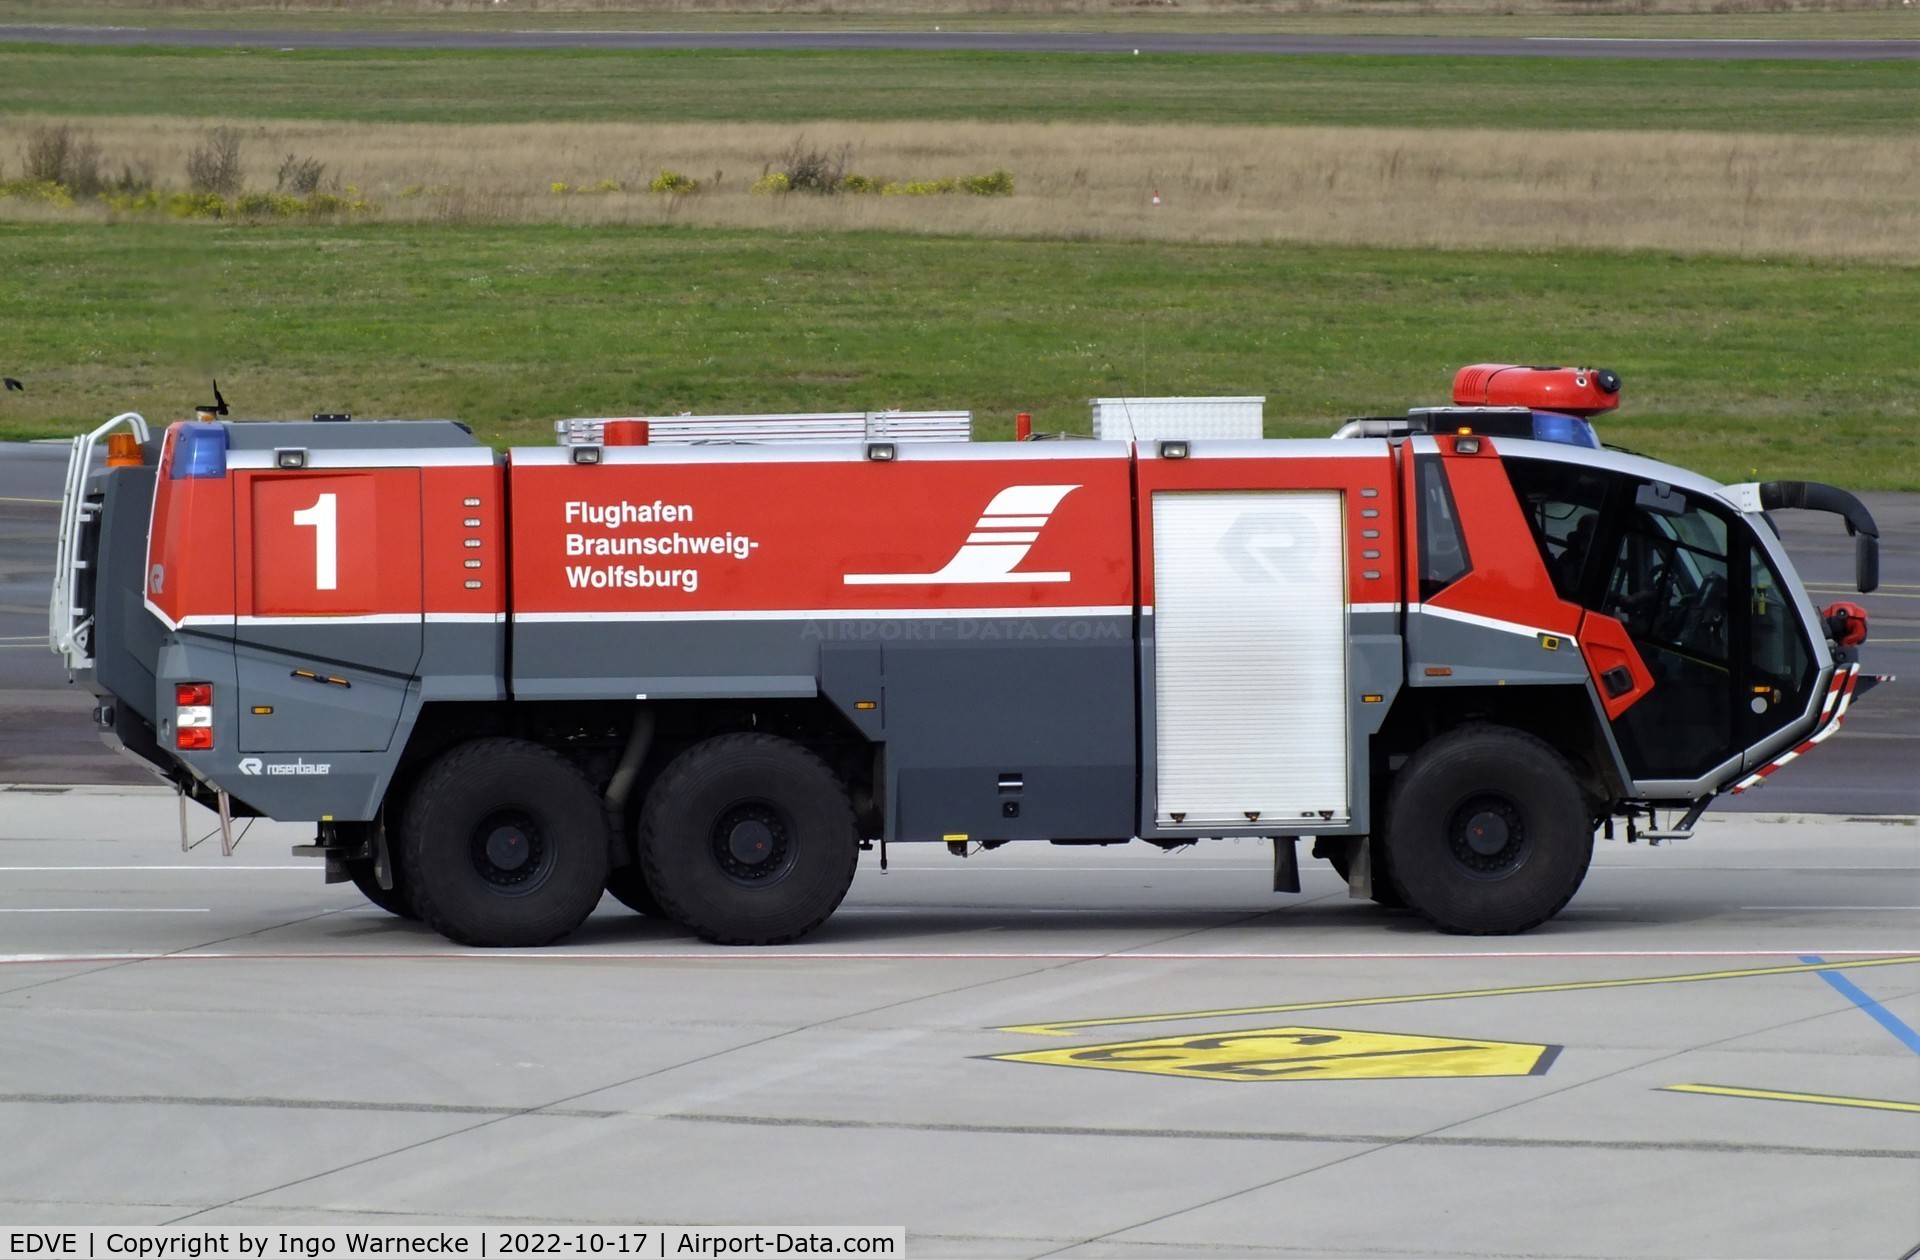 Braunschweig-Wolfsburg Regional Airport, Braunschweig, Lower Saxony Germany (EDVE) - airfield fire truck at Braunschweig-Wolfsburg airport, BS/Waggum